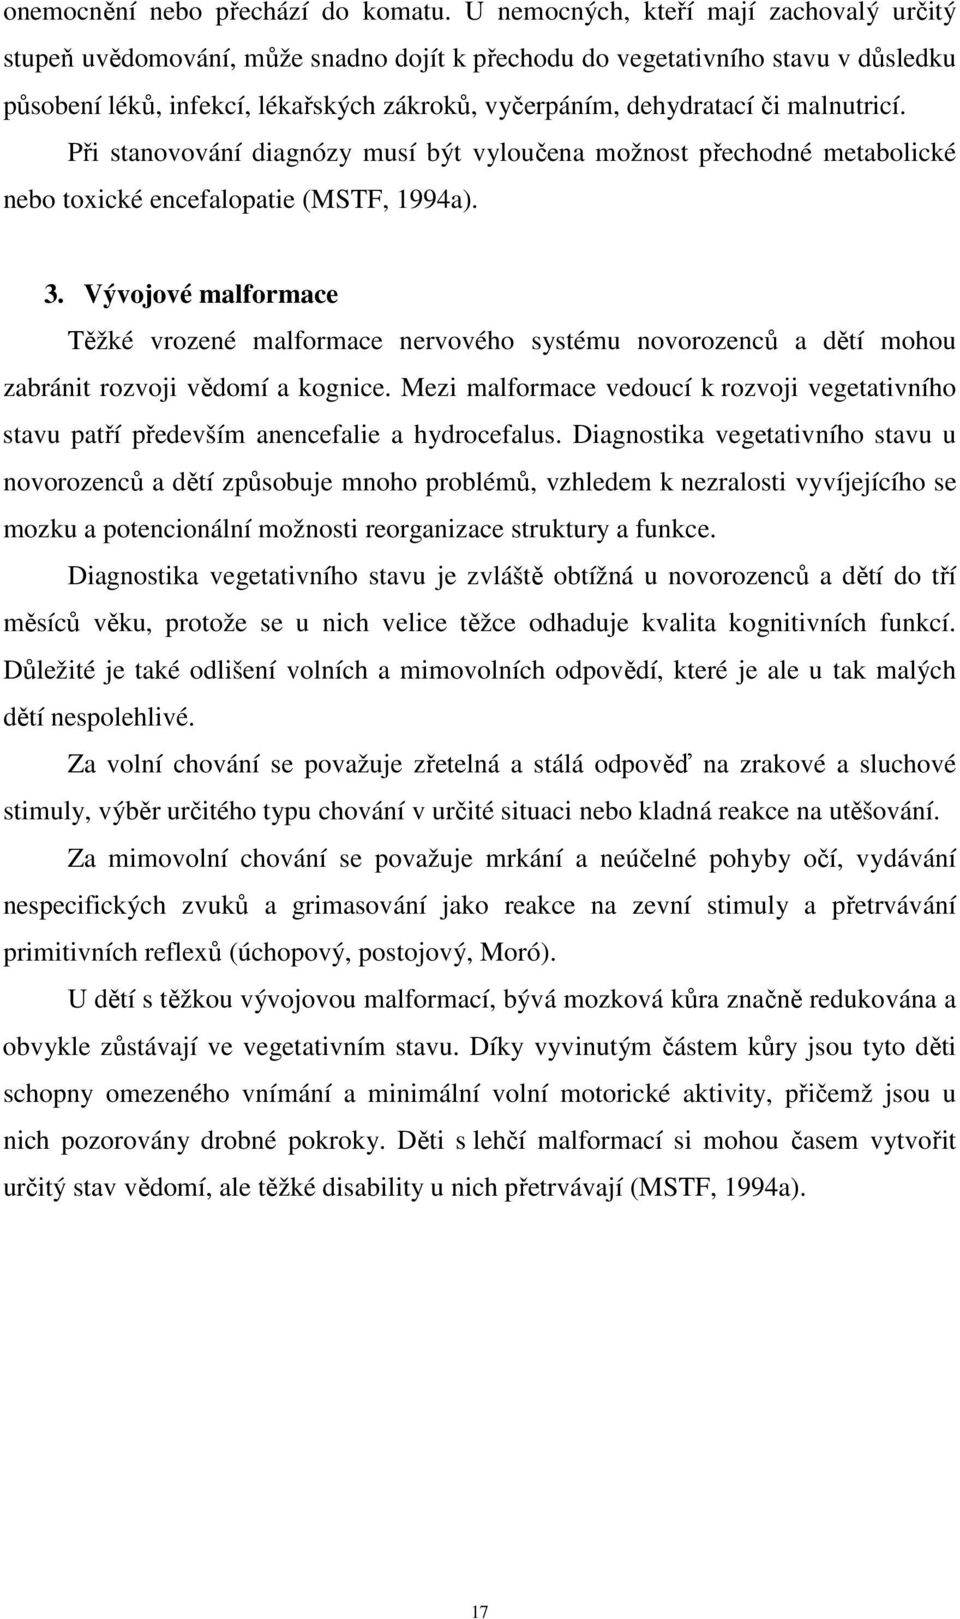 malnutricí. Při stanovování diagnózy musí být vyloučena možnost přechodné metabolické nebo toxické encefalopatie (MSTF, 1994a). 3.